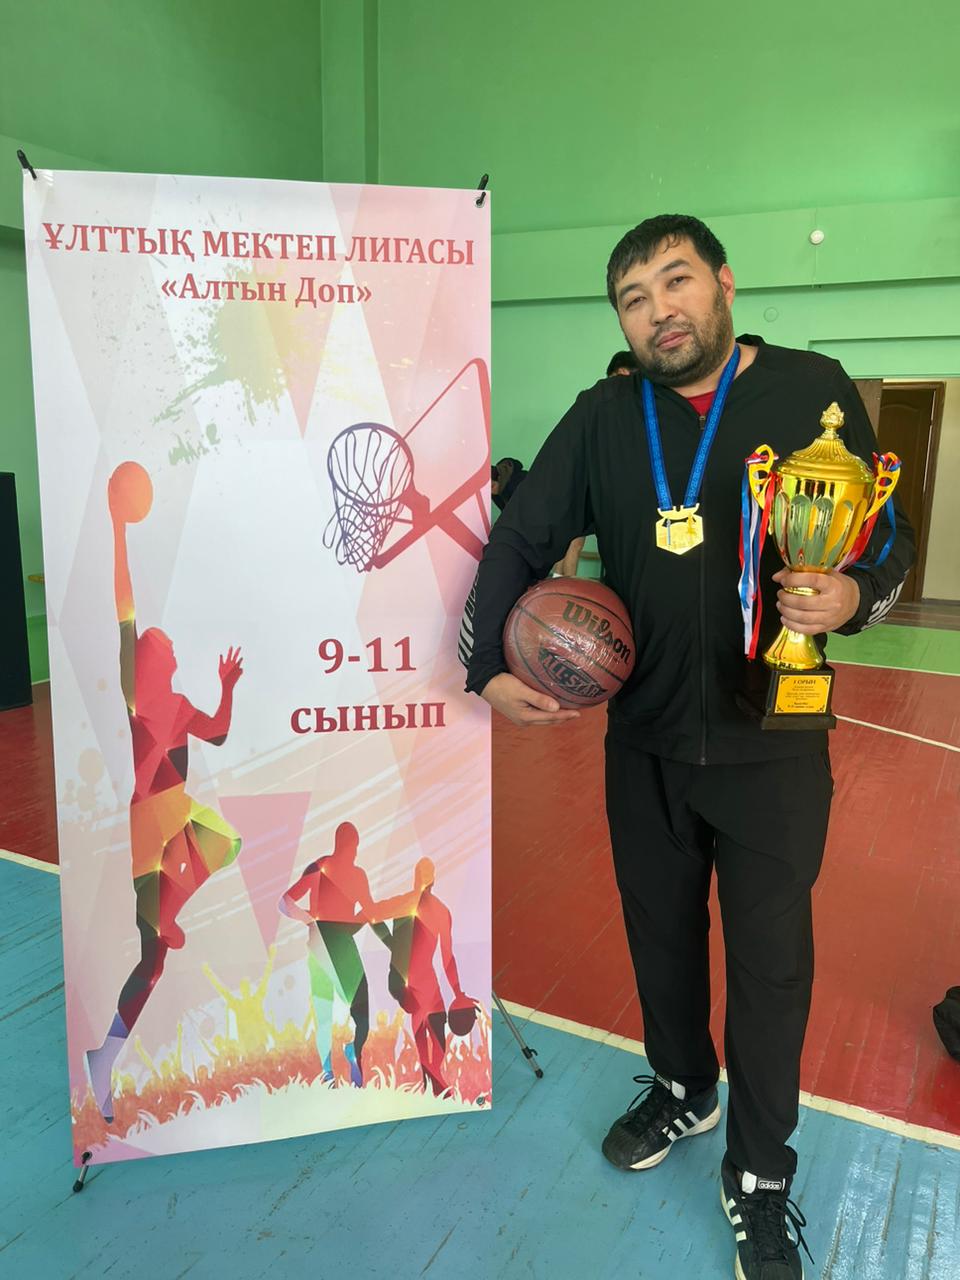 Ұлттық мектеп лигасы, қала бойынша өткен баскетболдан 1-орын.